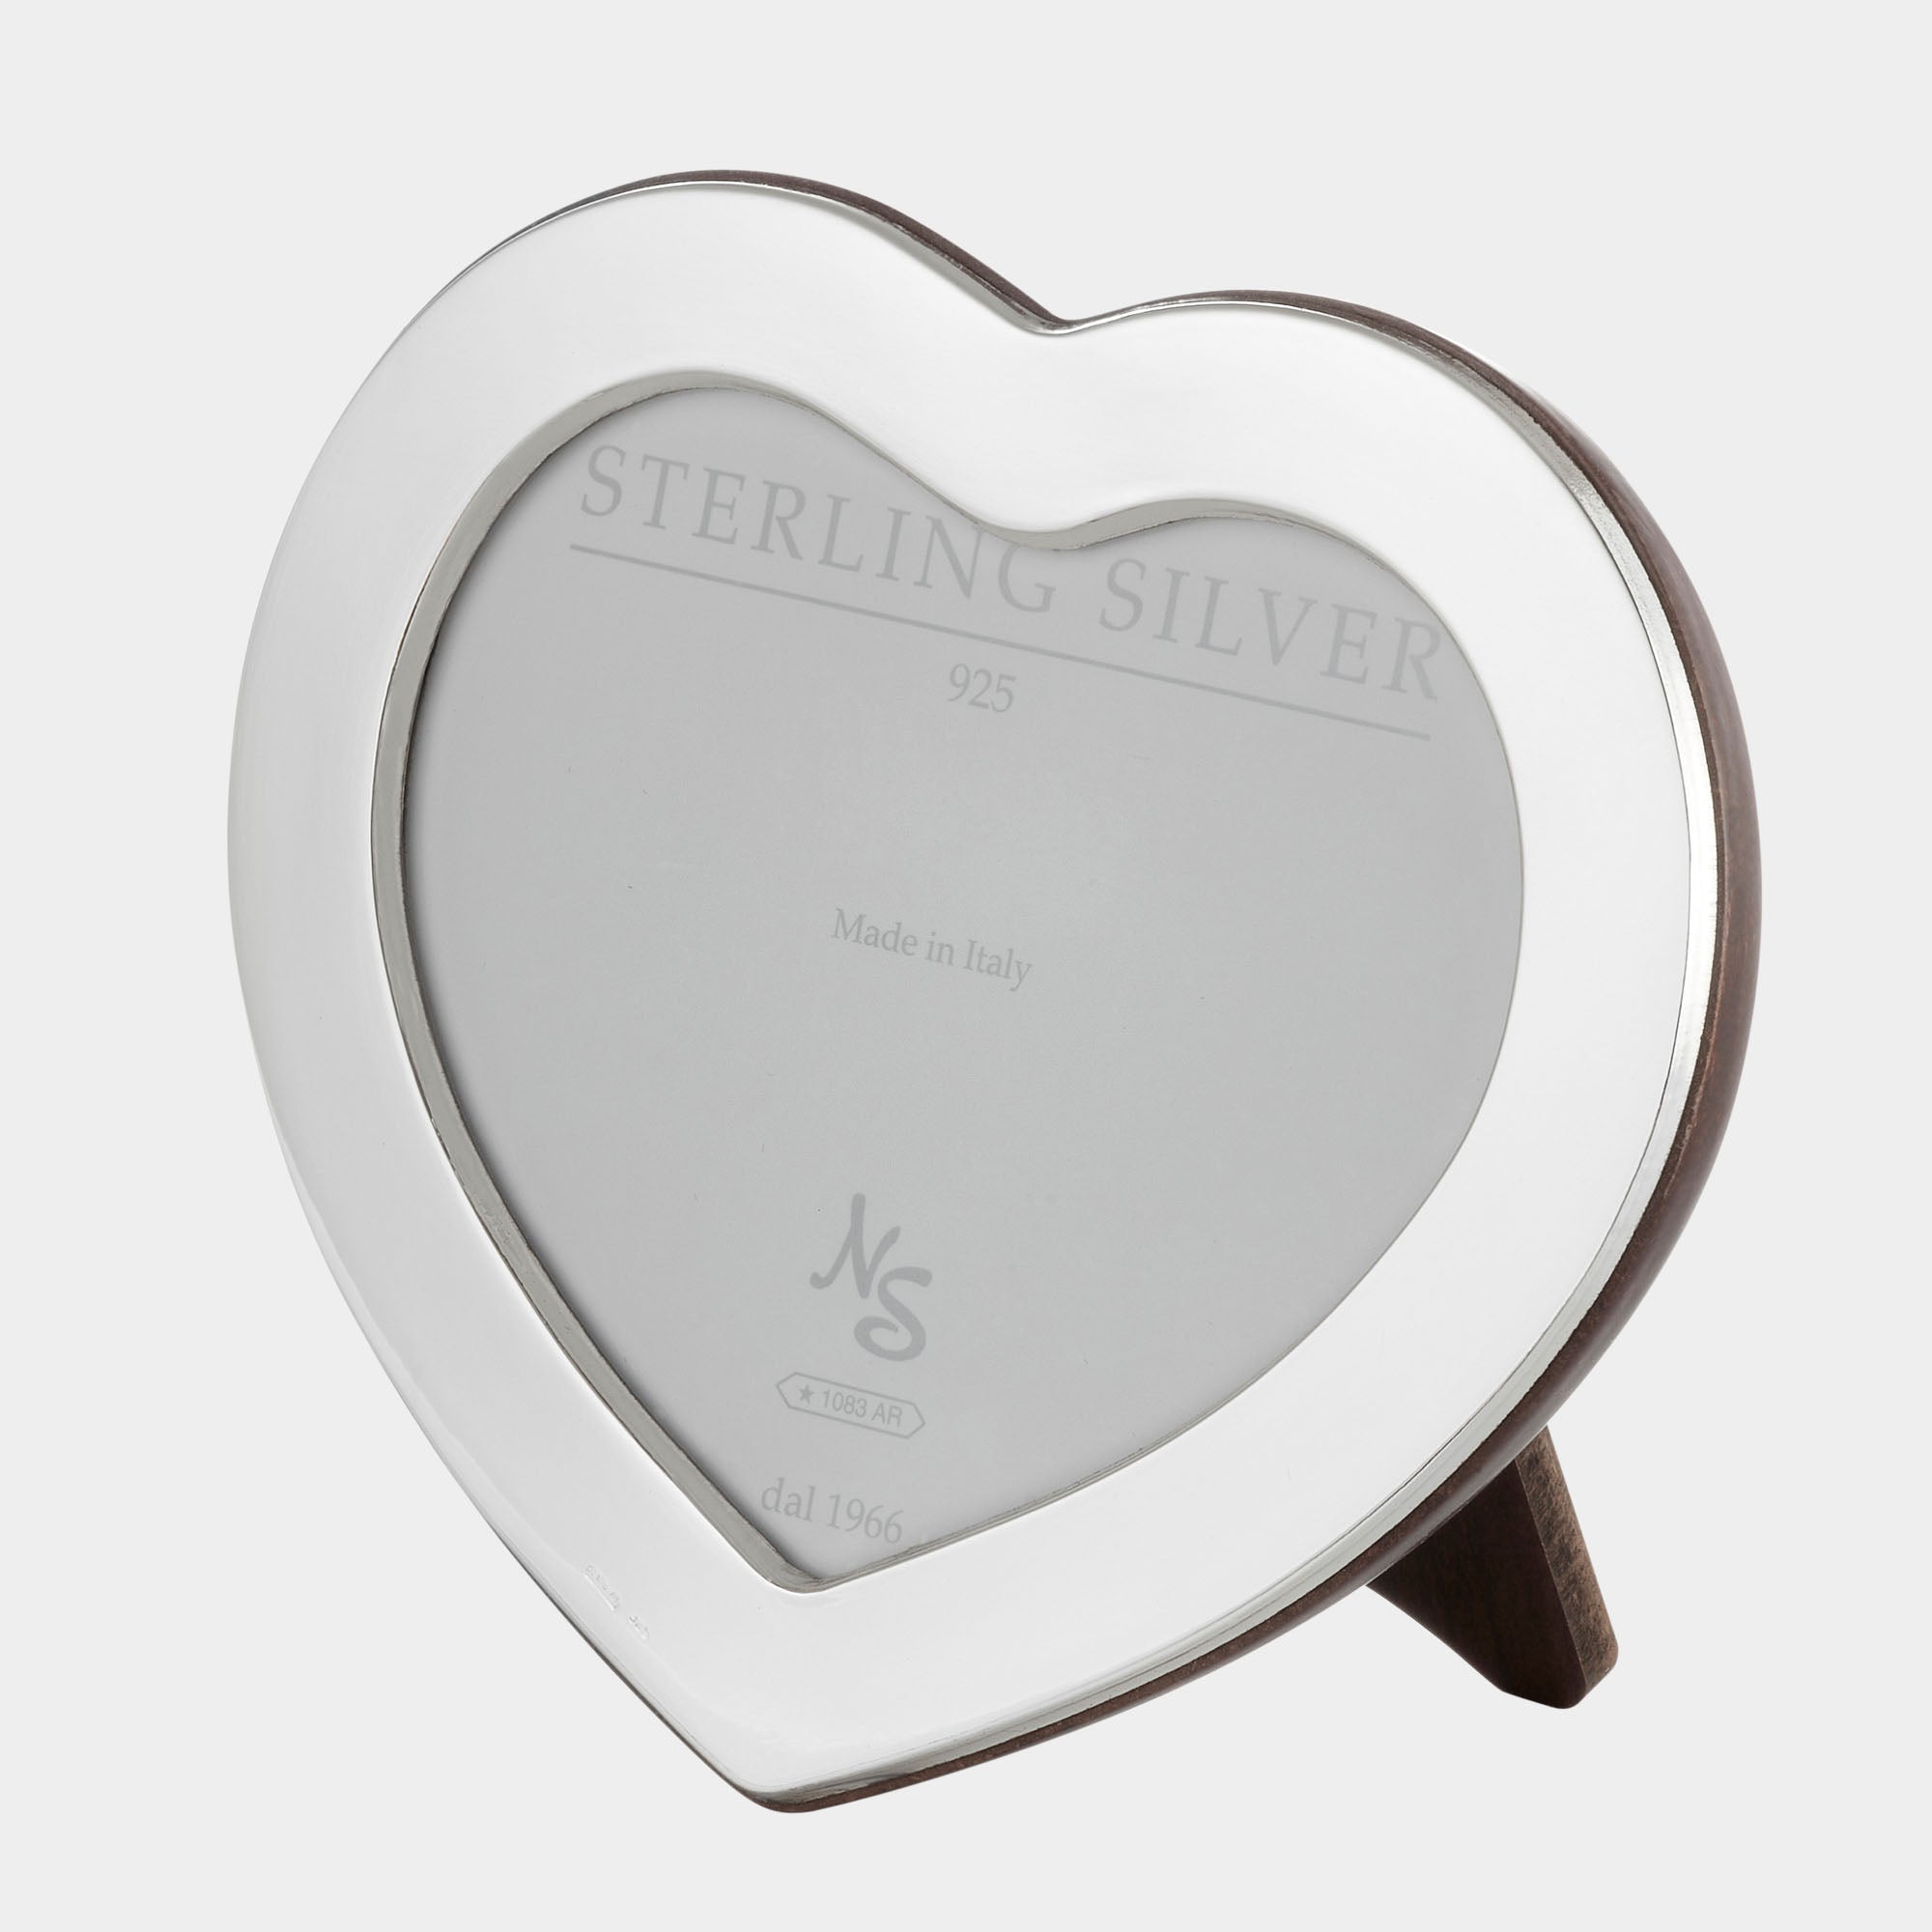 Italienischer Silberrahmen Herzform - 6x9 cm - 925er Echtsilber - Bild 1